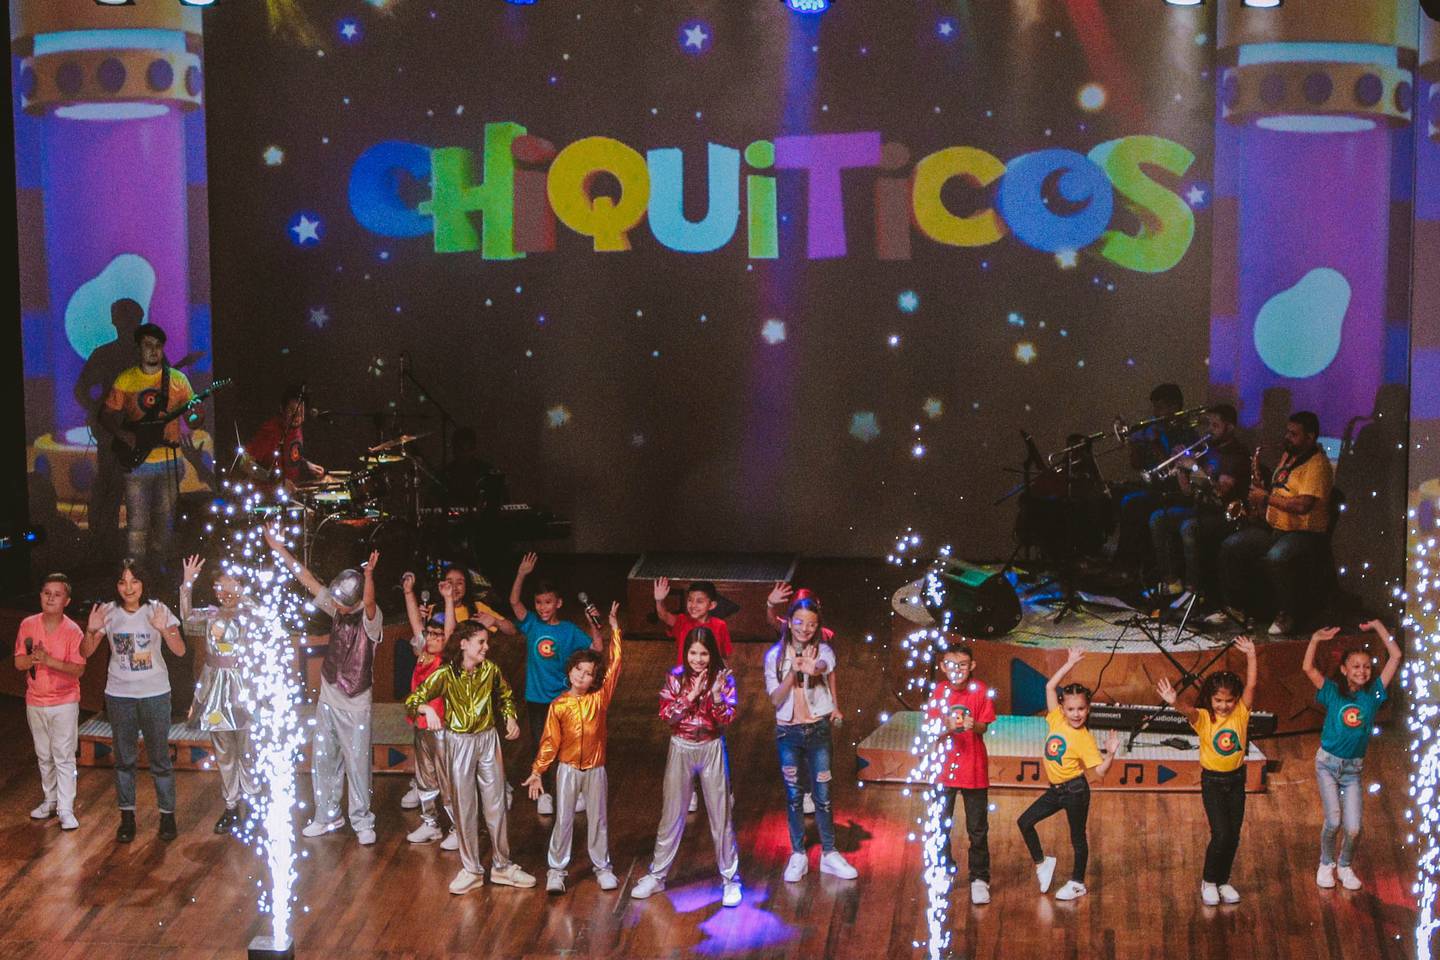 La agrupación infantil Chiquiticos tendrá un espectáculo con canciones originales y populares entre niños (Foto: Museo de los Niños)